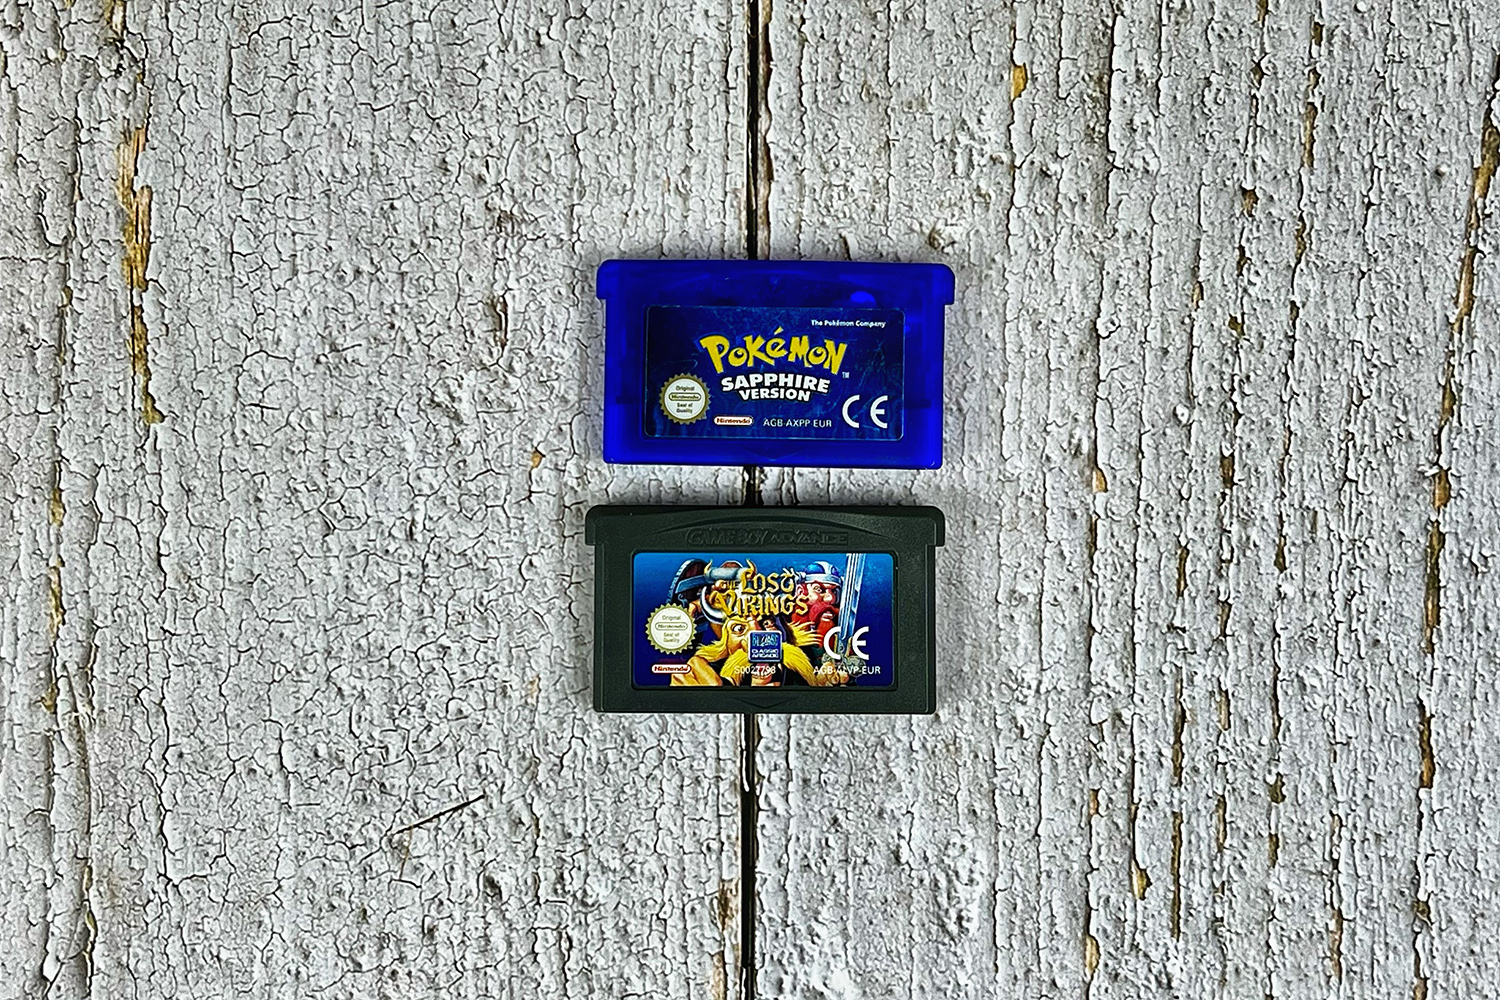 Game Boy Advance cartridge